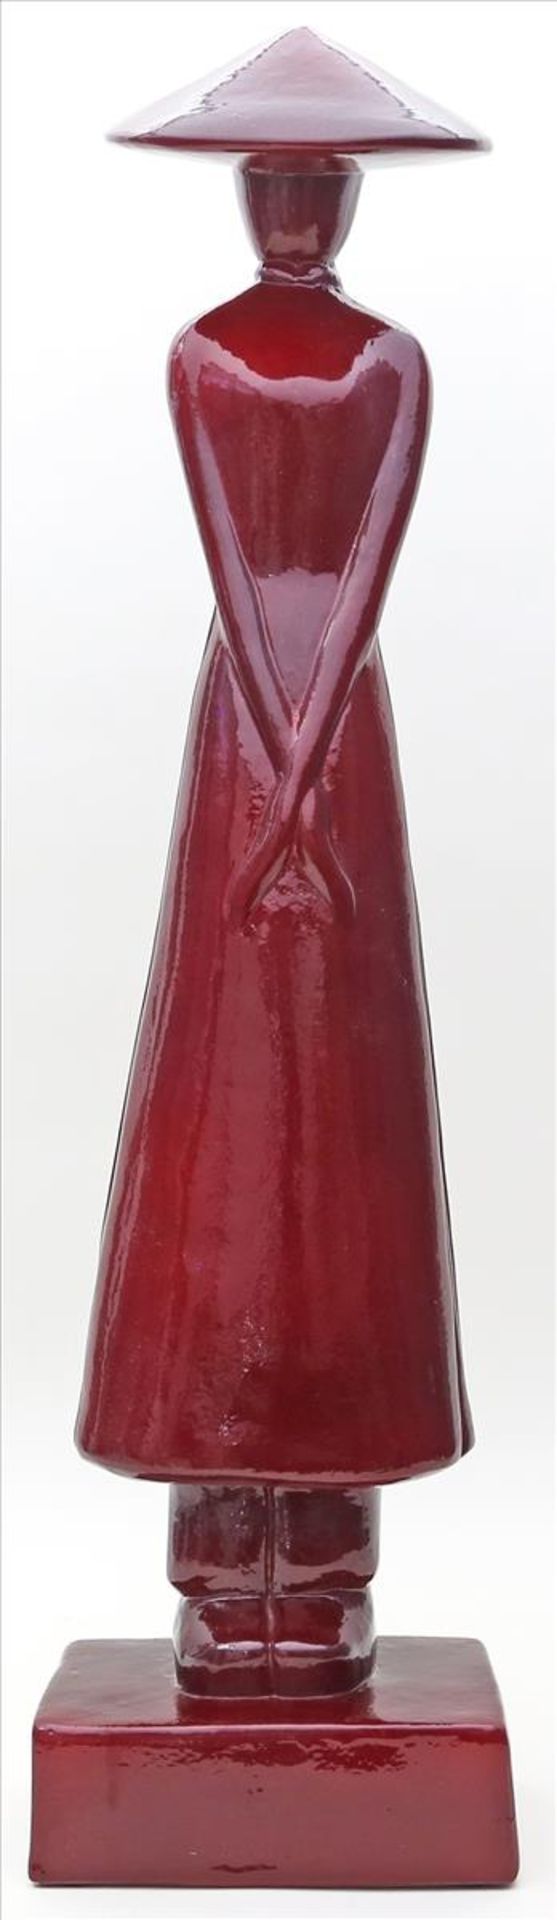 Skulptur einer stilisierten Frau.Rot glasierte Keramik. Unterseite mit Etikett Mirabeau. H. 70 cm.